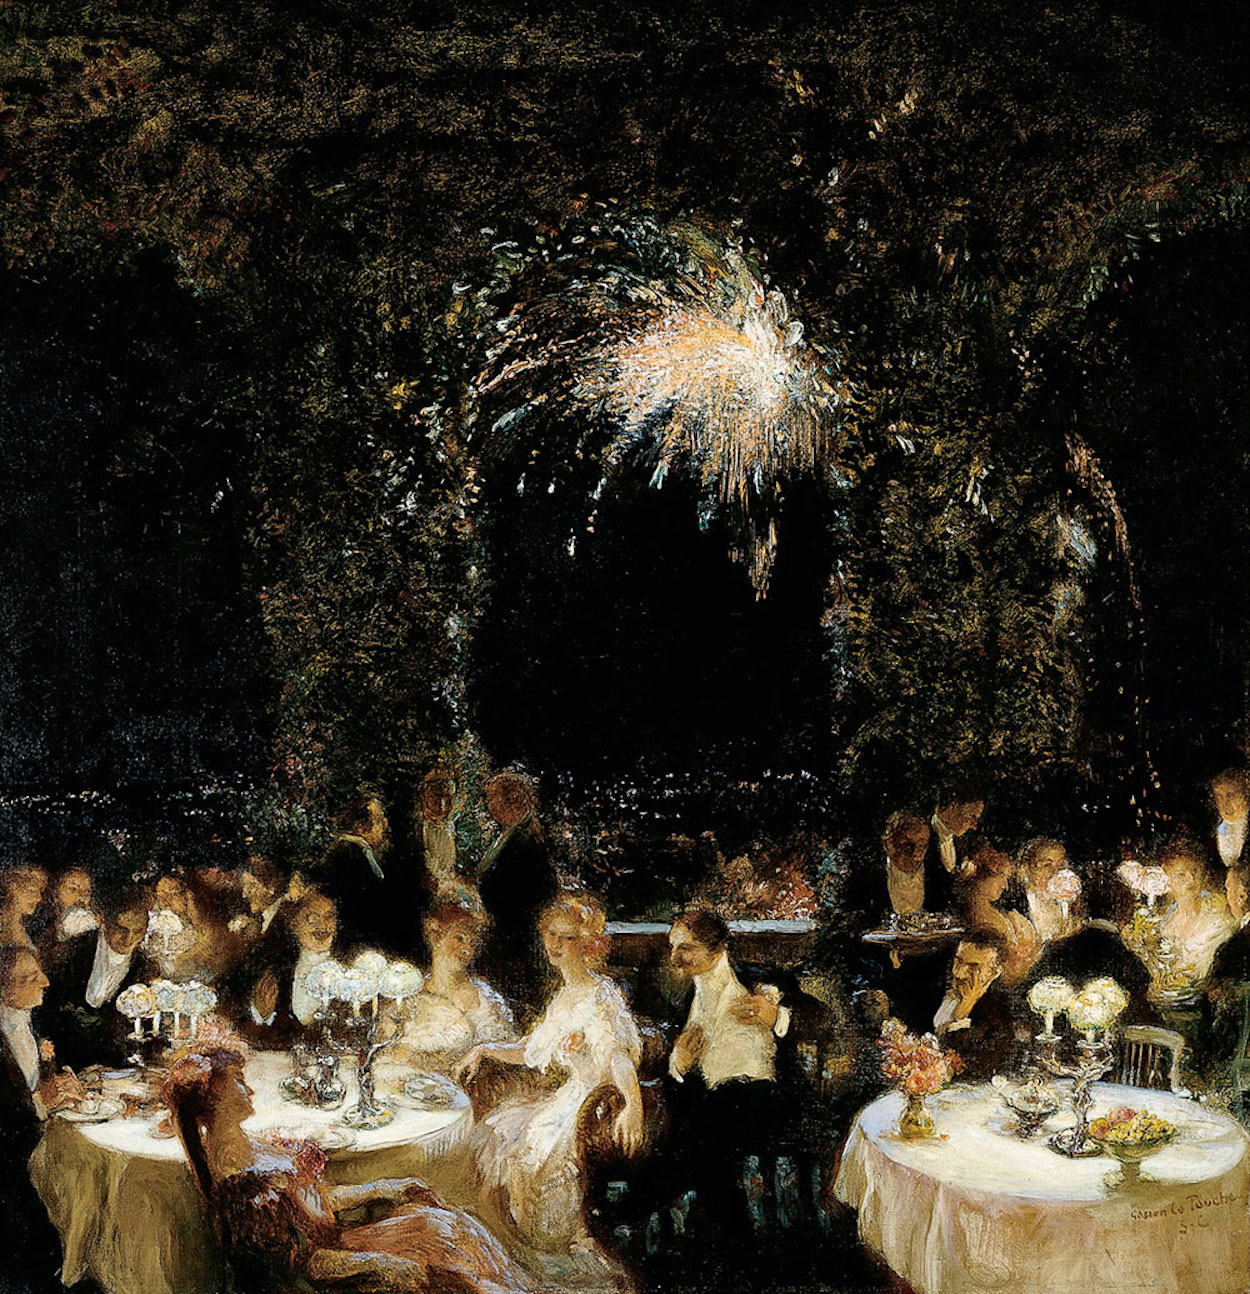 赌场晚宴 by 加斯通·德 拉图什 - 1906 - 99.1 x 95.6 cm 代顿艺术学院